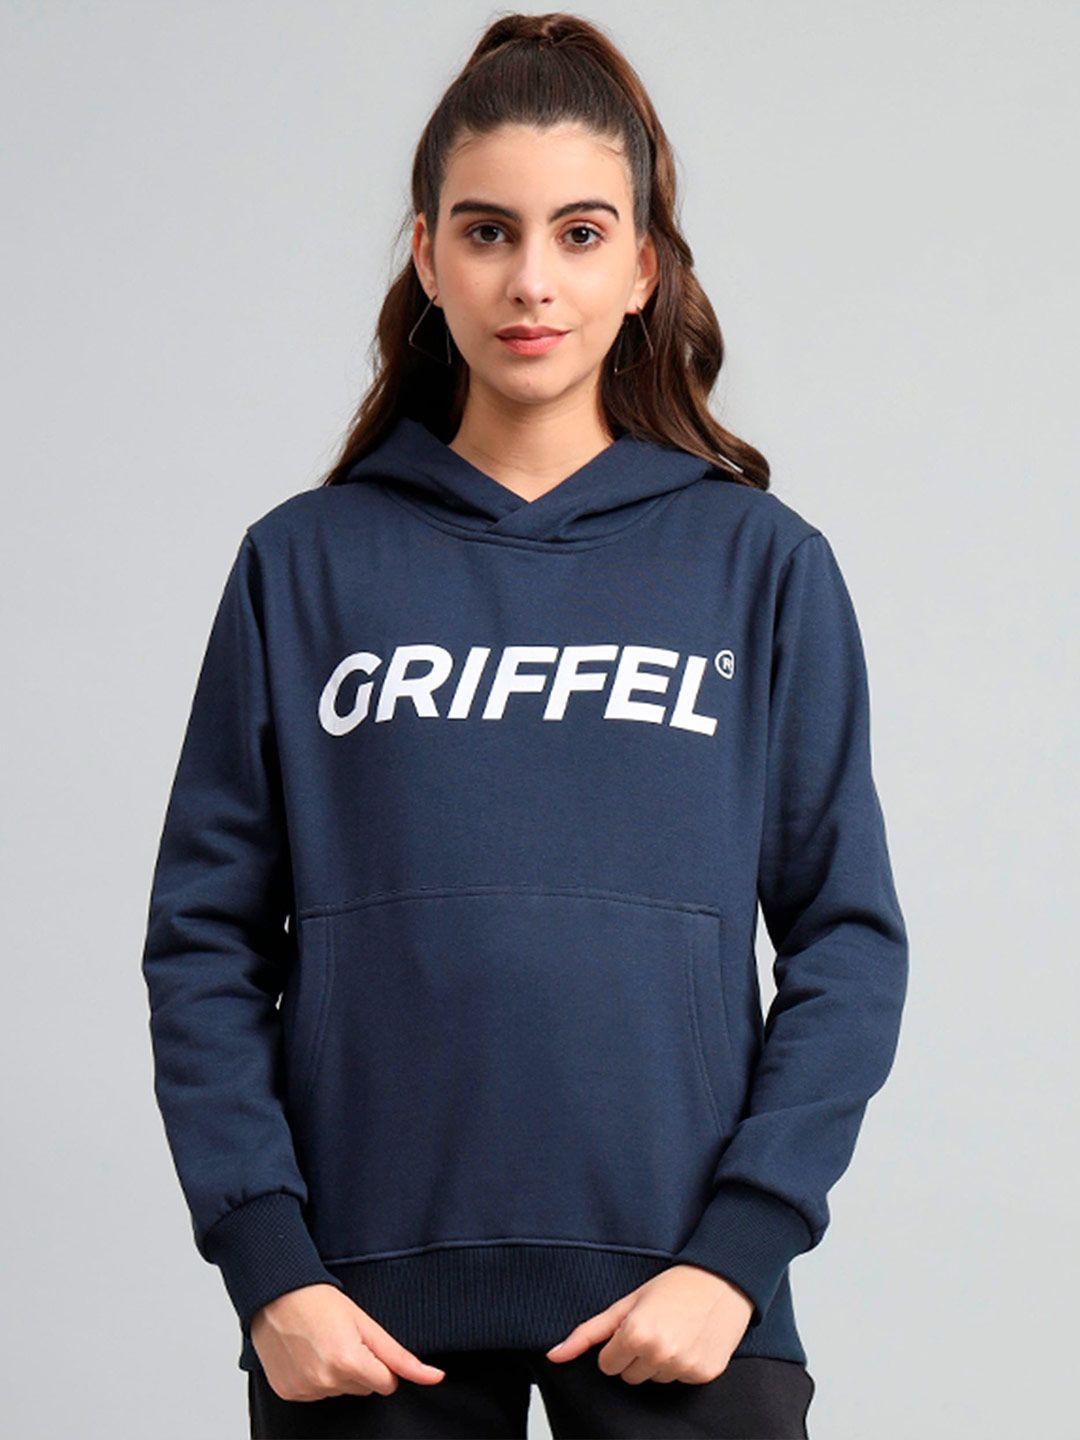 GRIFFEL Typography Printed Long Sleeves Hooded Pullover Sweatshirt